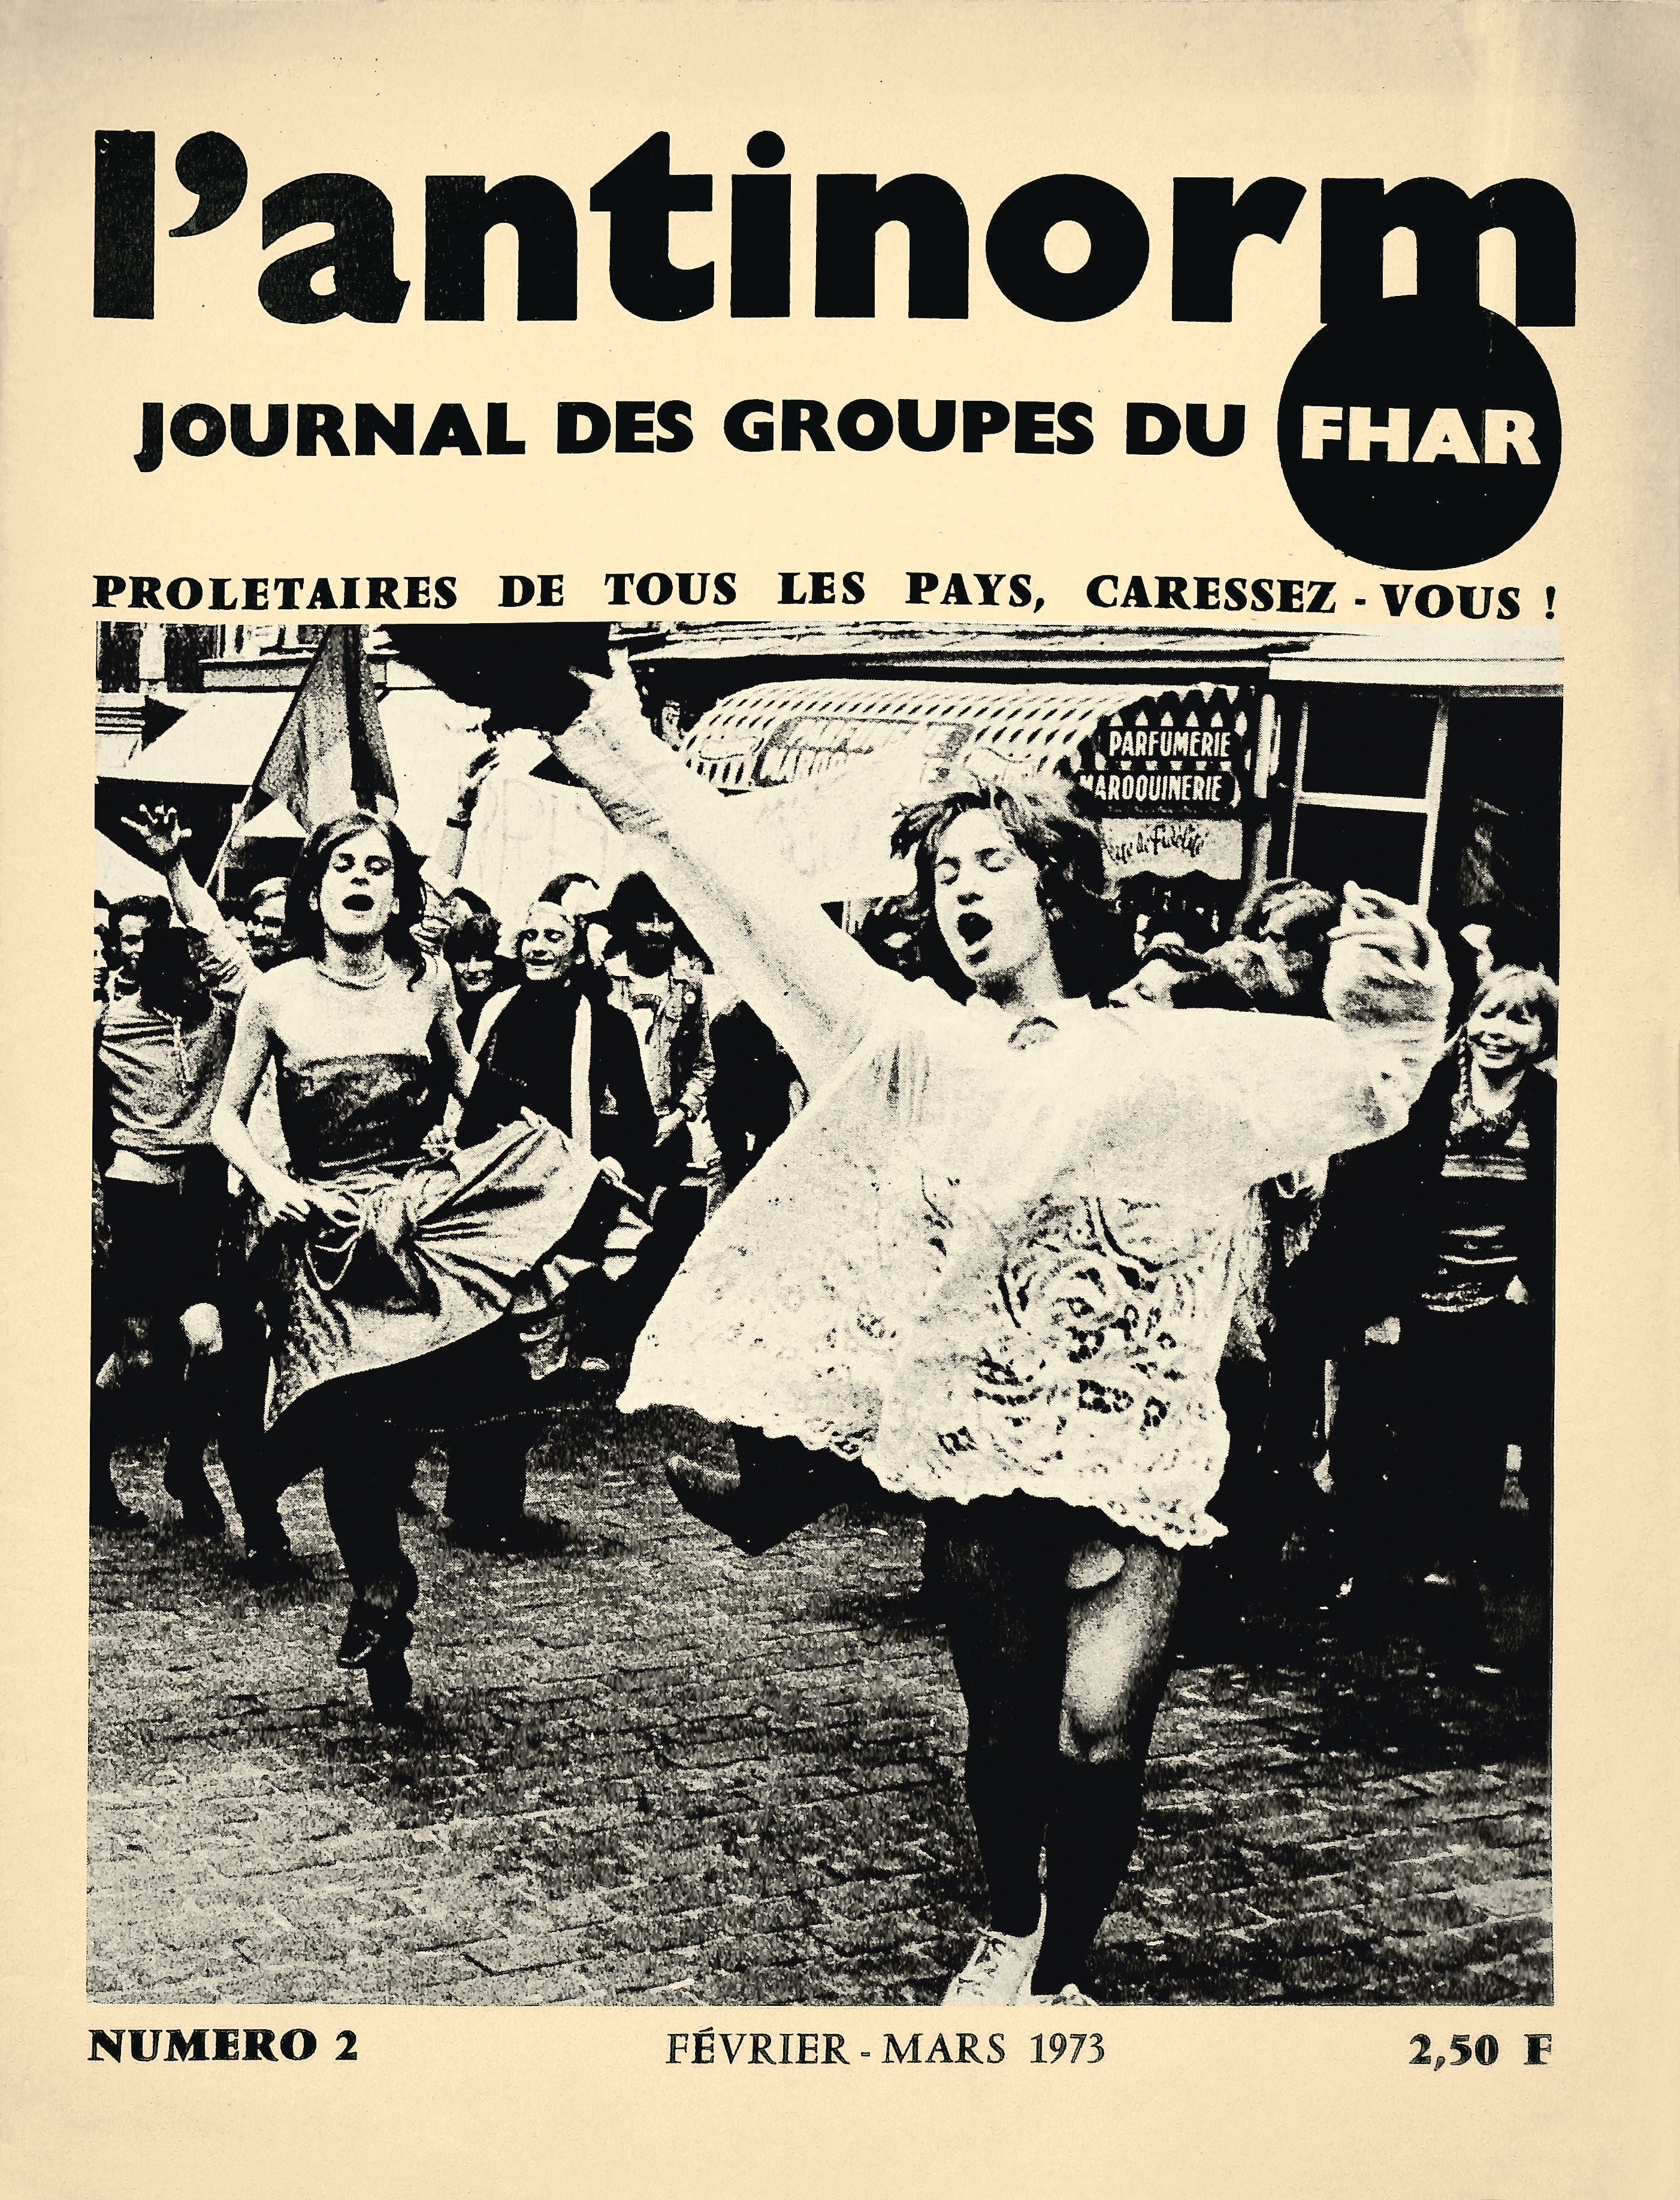 Couverture du magazine L’Antinorm, n° 2, février-mars 1973